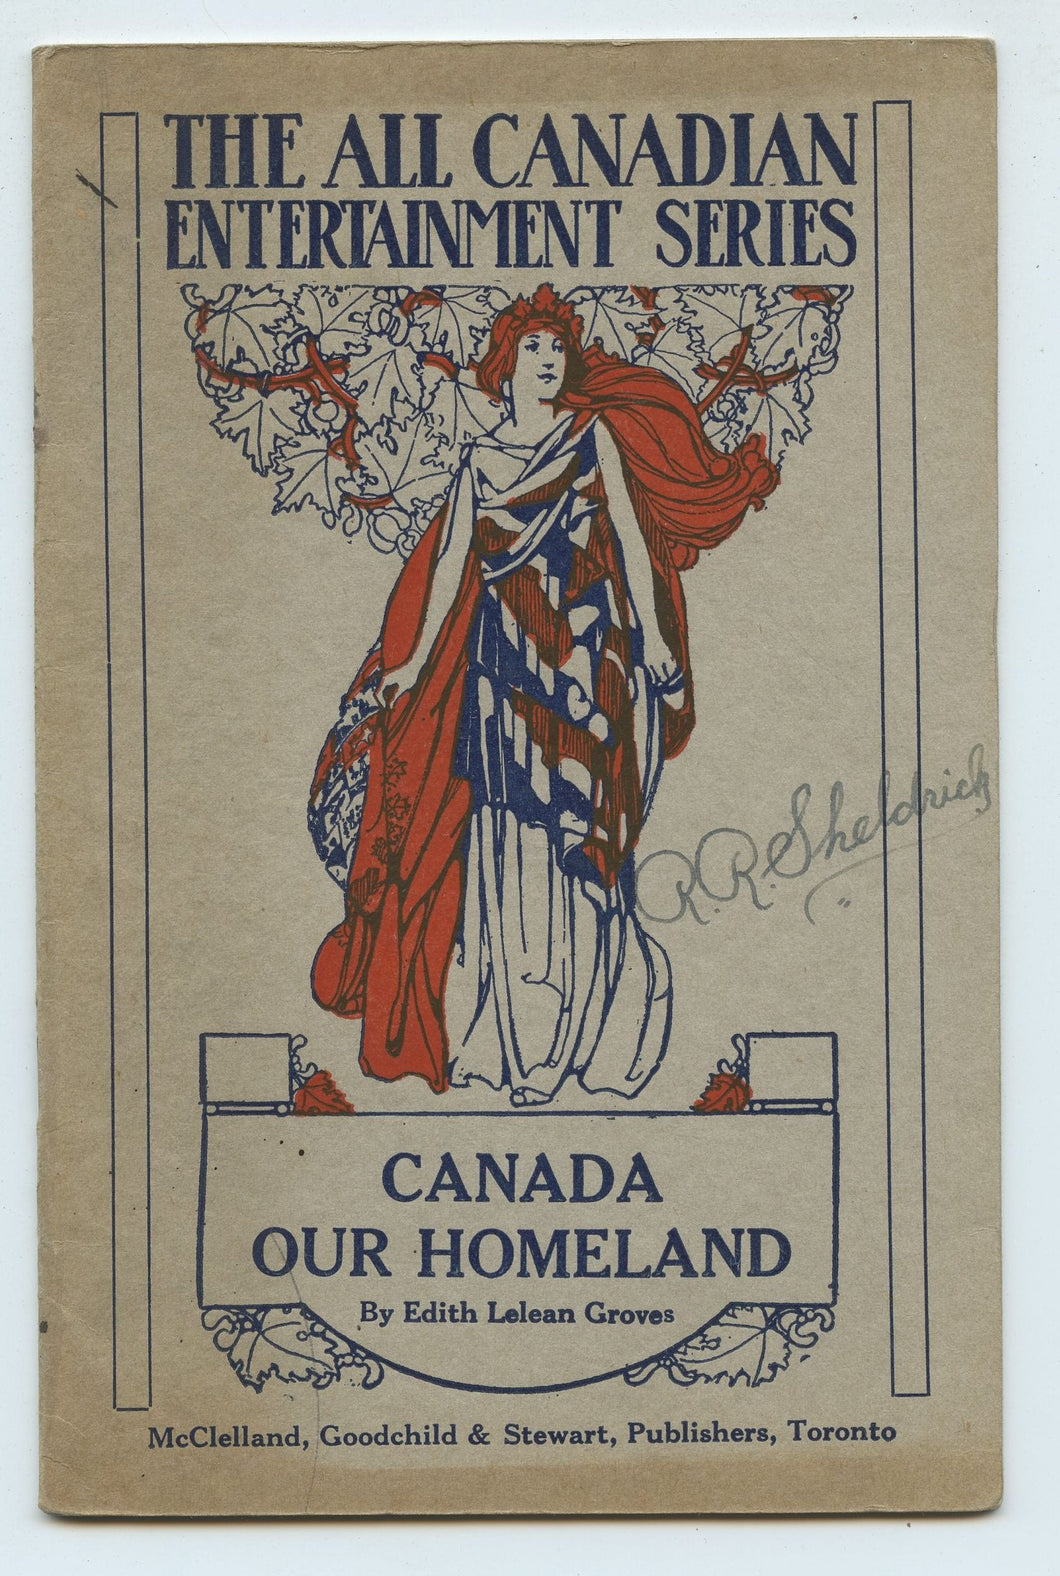 Canada Our Homeland